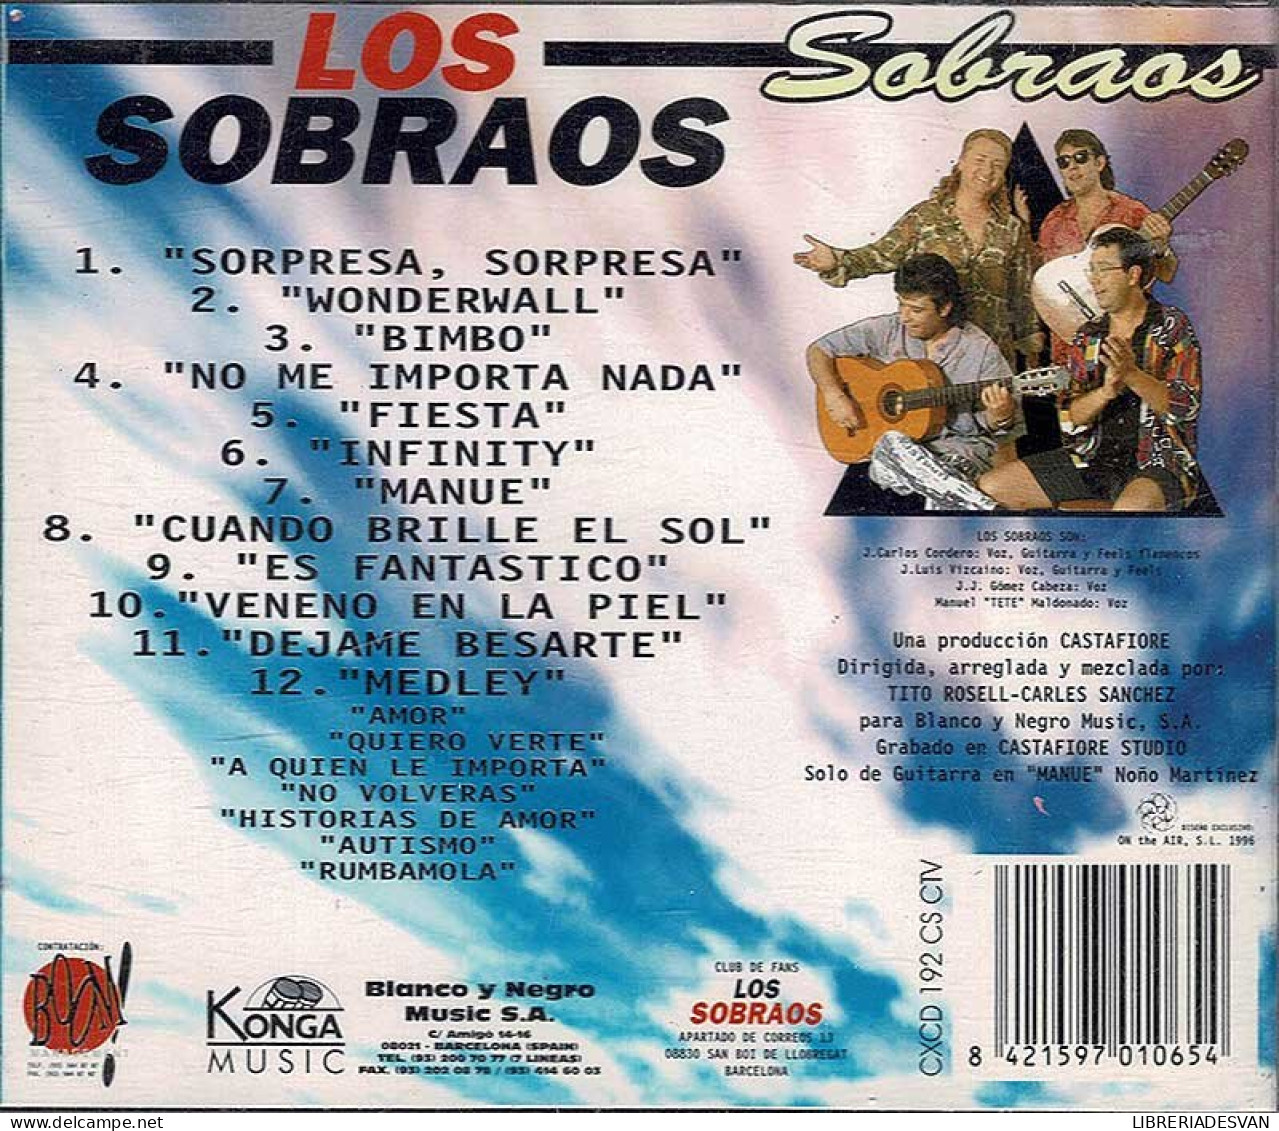 Los Sobraos - Sobraos. CD - Sonstige - Spanische Musik